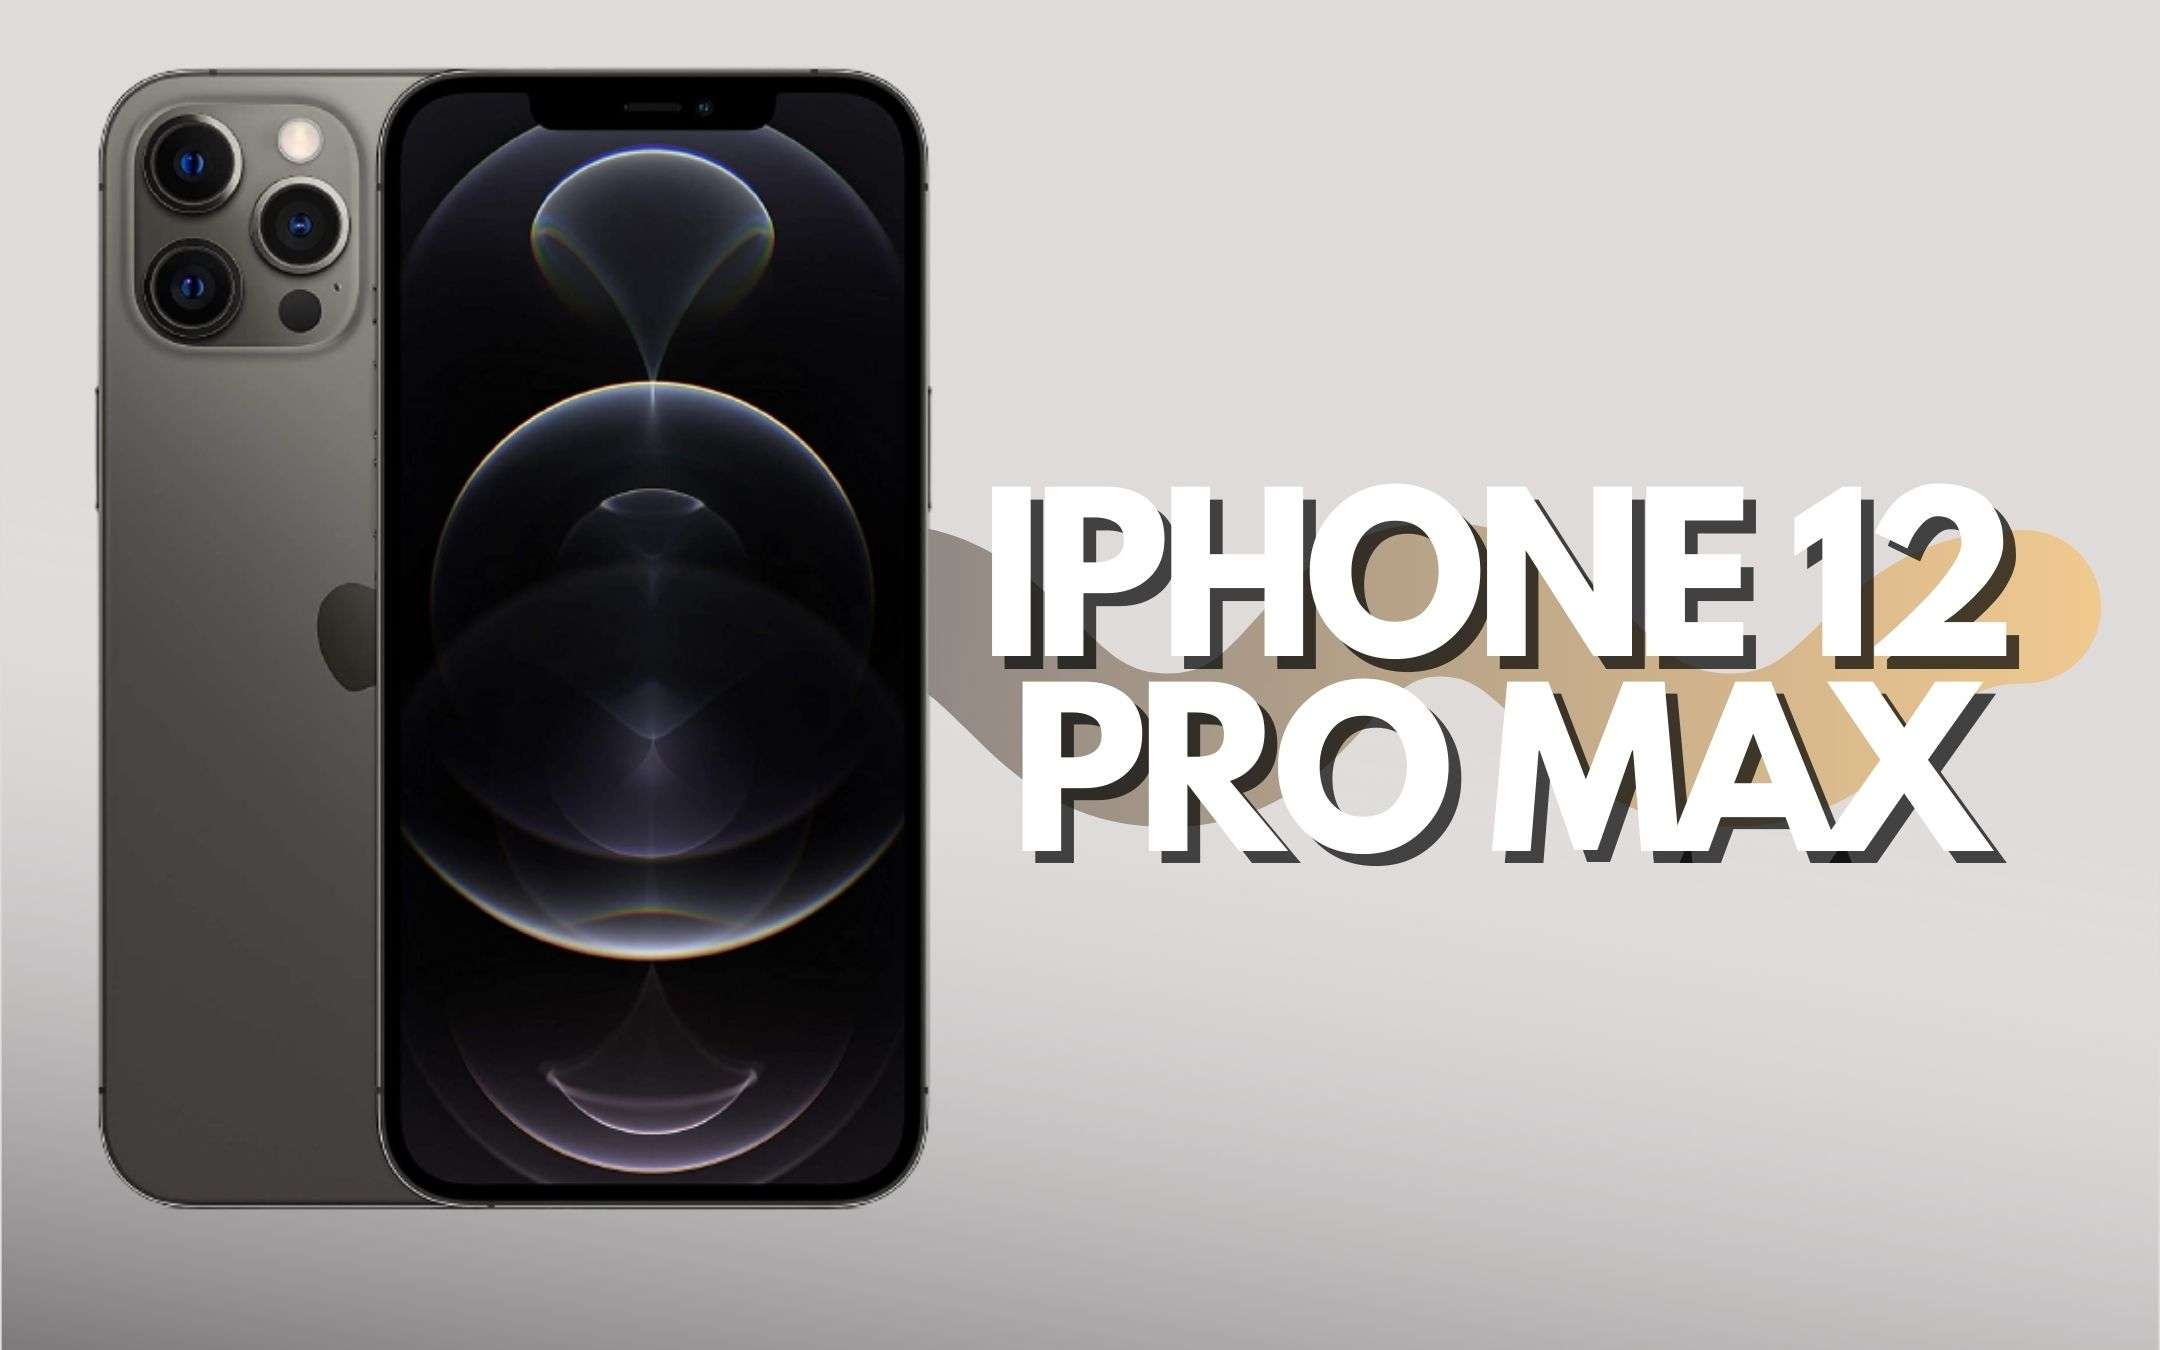 iPhone 12 Pro Max da 256 GB in offerta anche a rate